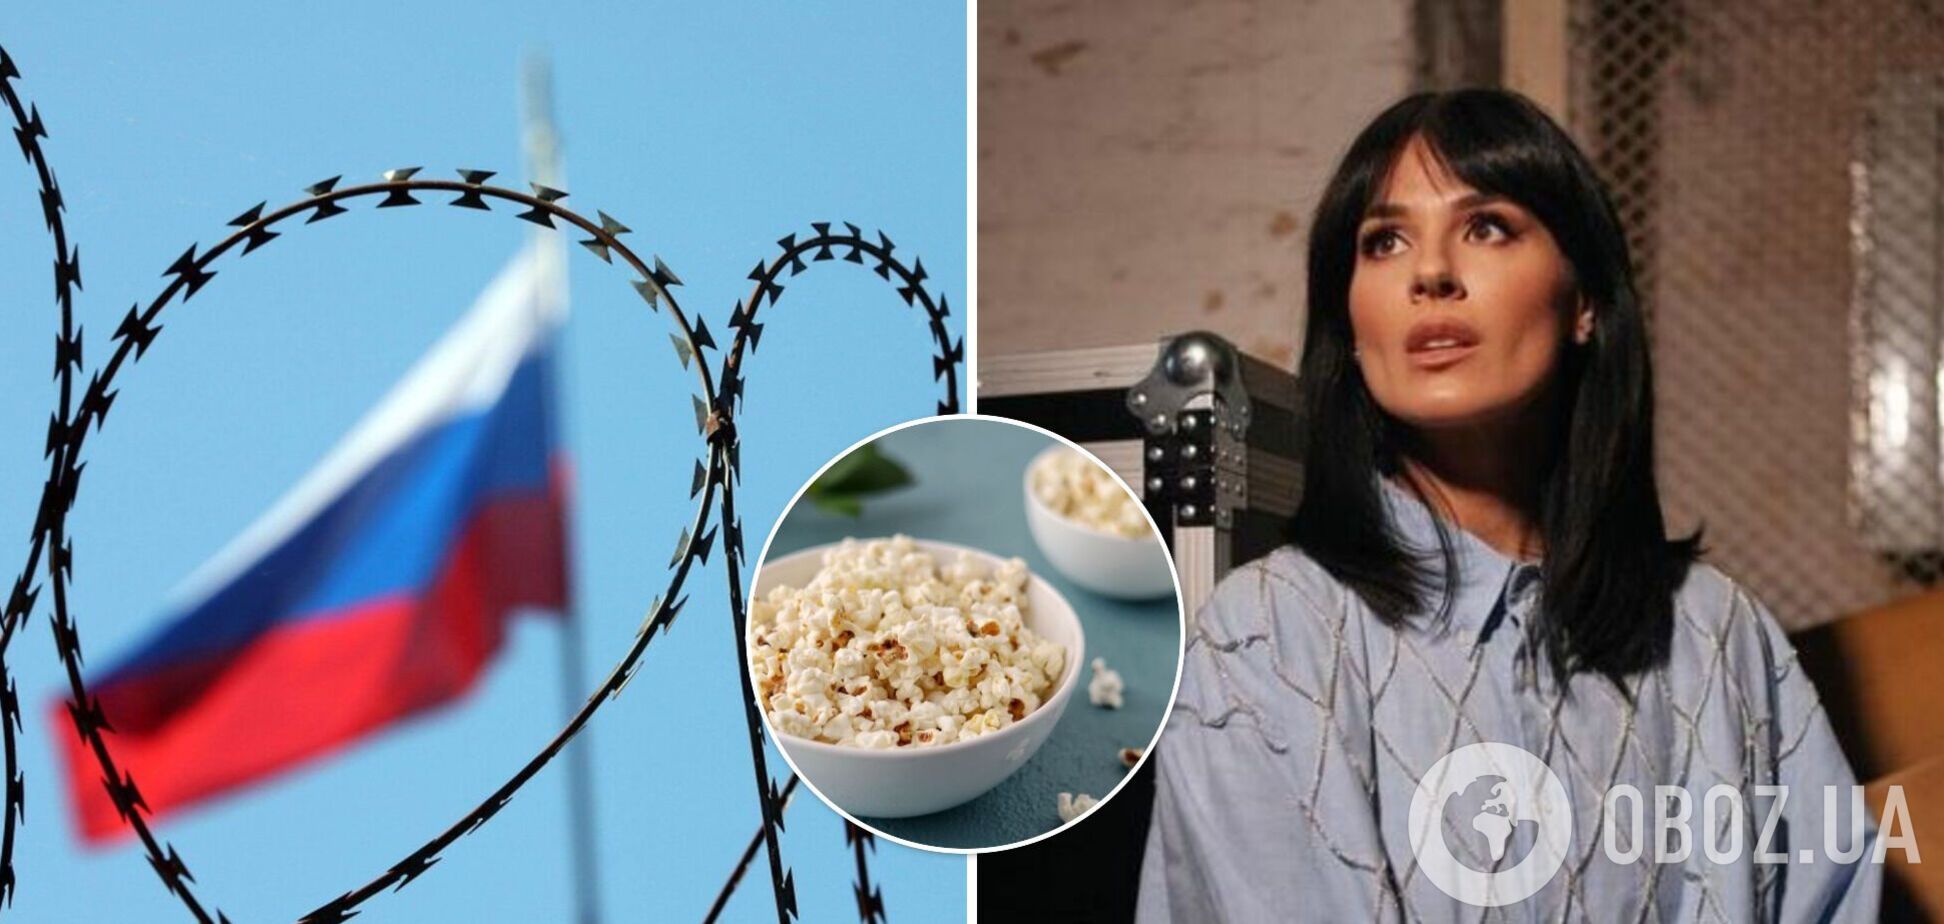 Маша Ефросинина – о публичных срачах россиян из-за войны: началась агония, запасаемся попкорном